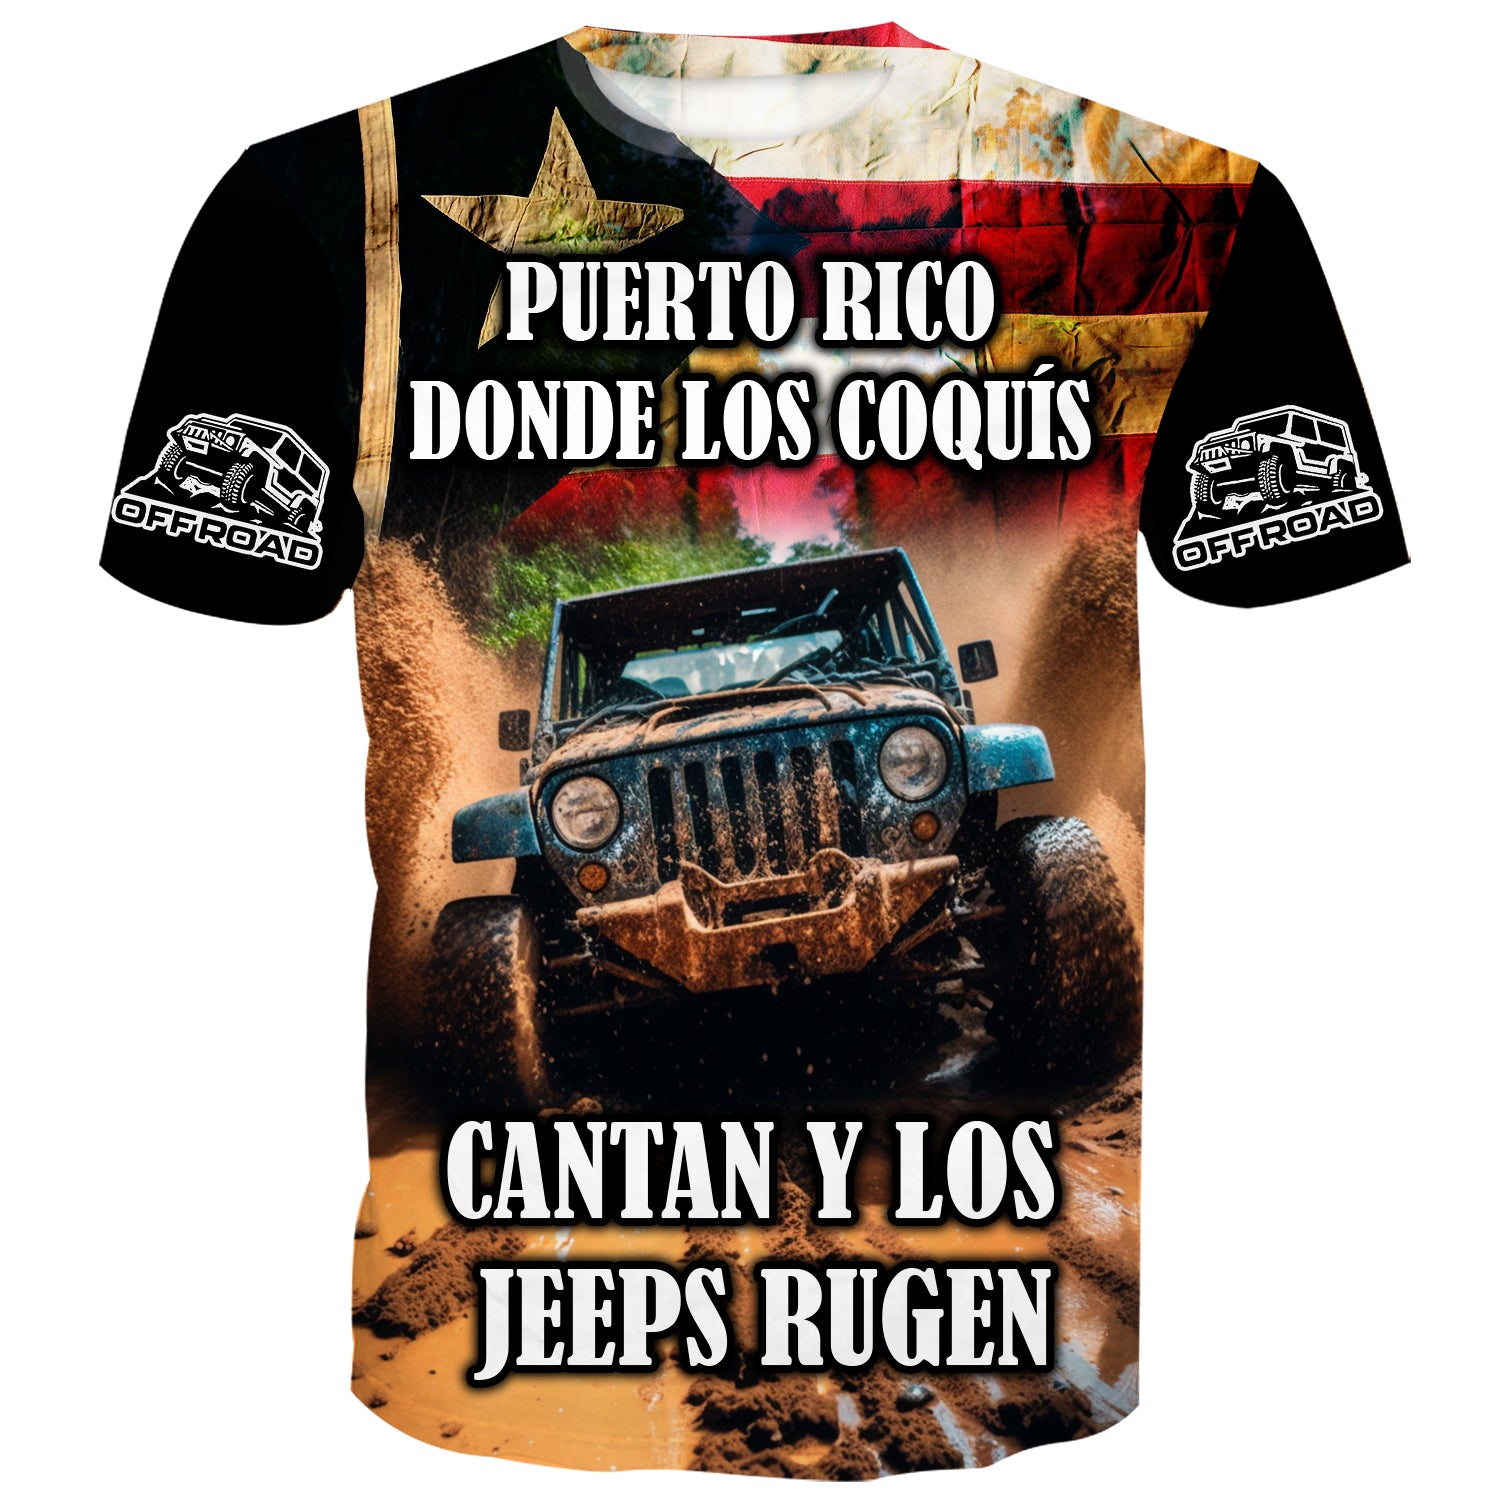 Puerto Rico donde los que cantan y los jeeps rugen - T-Shirt